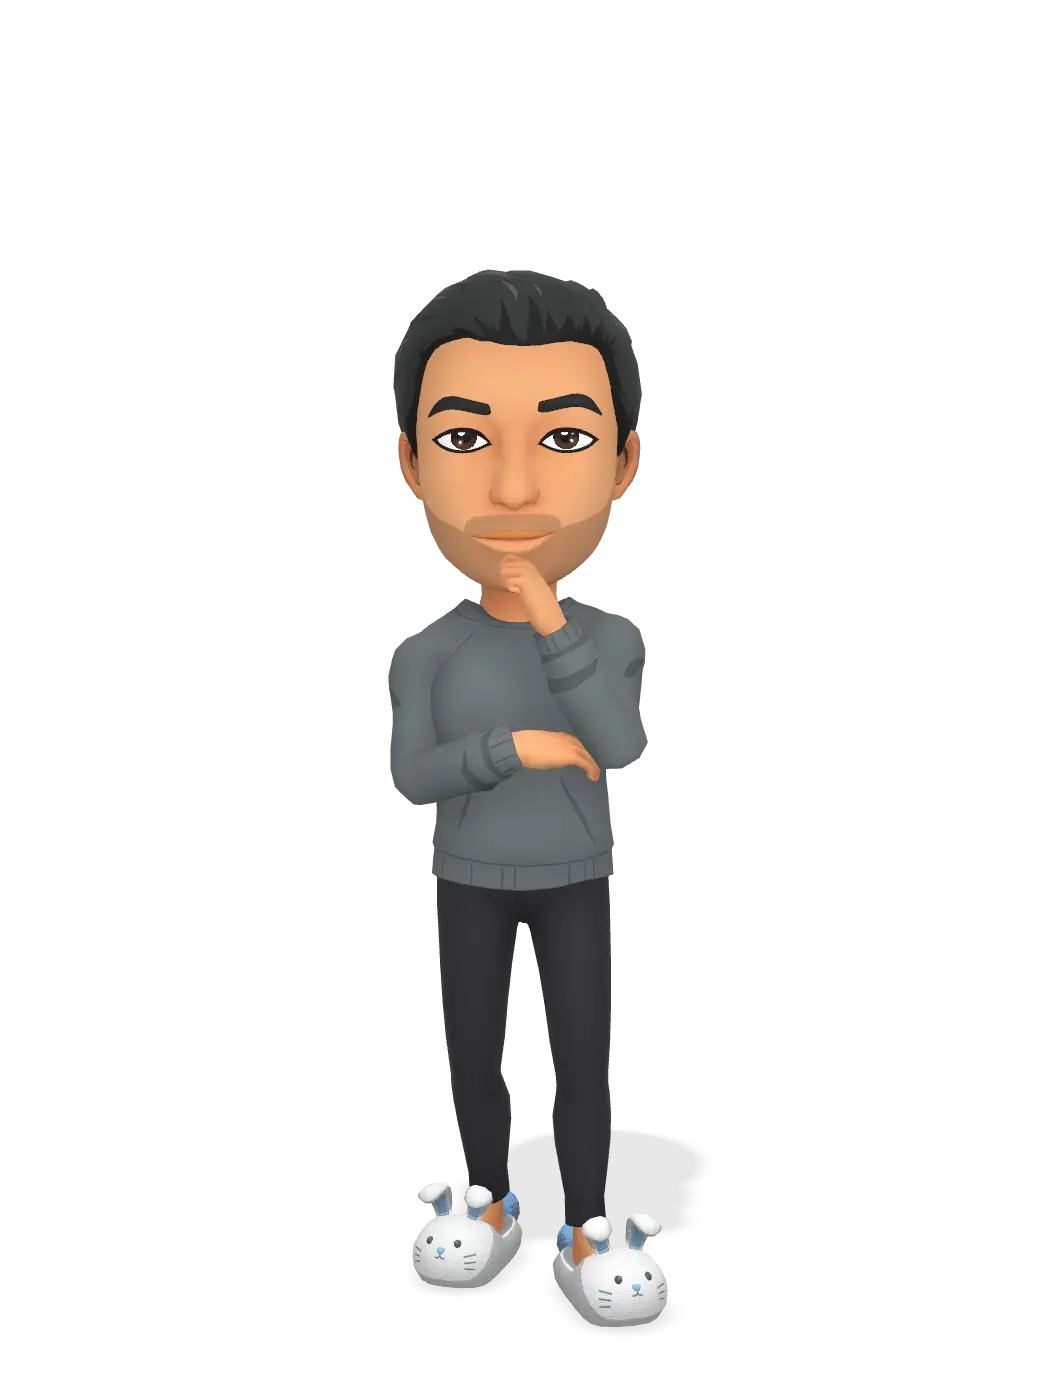 3D Bitmoji for elsalawwy avatar